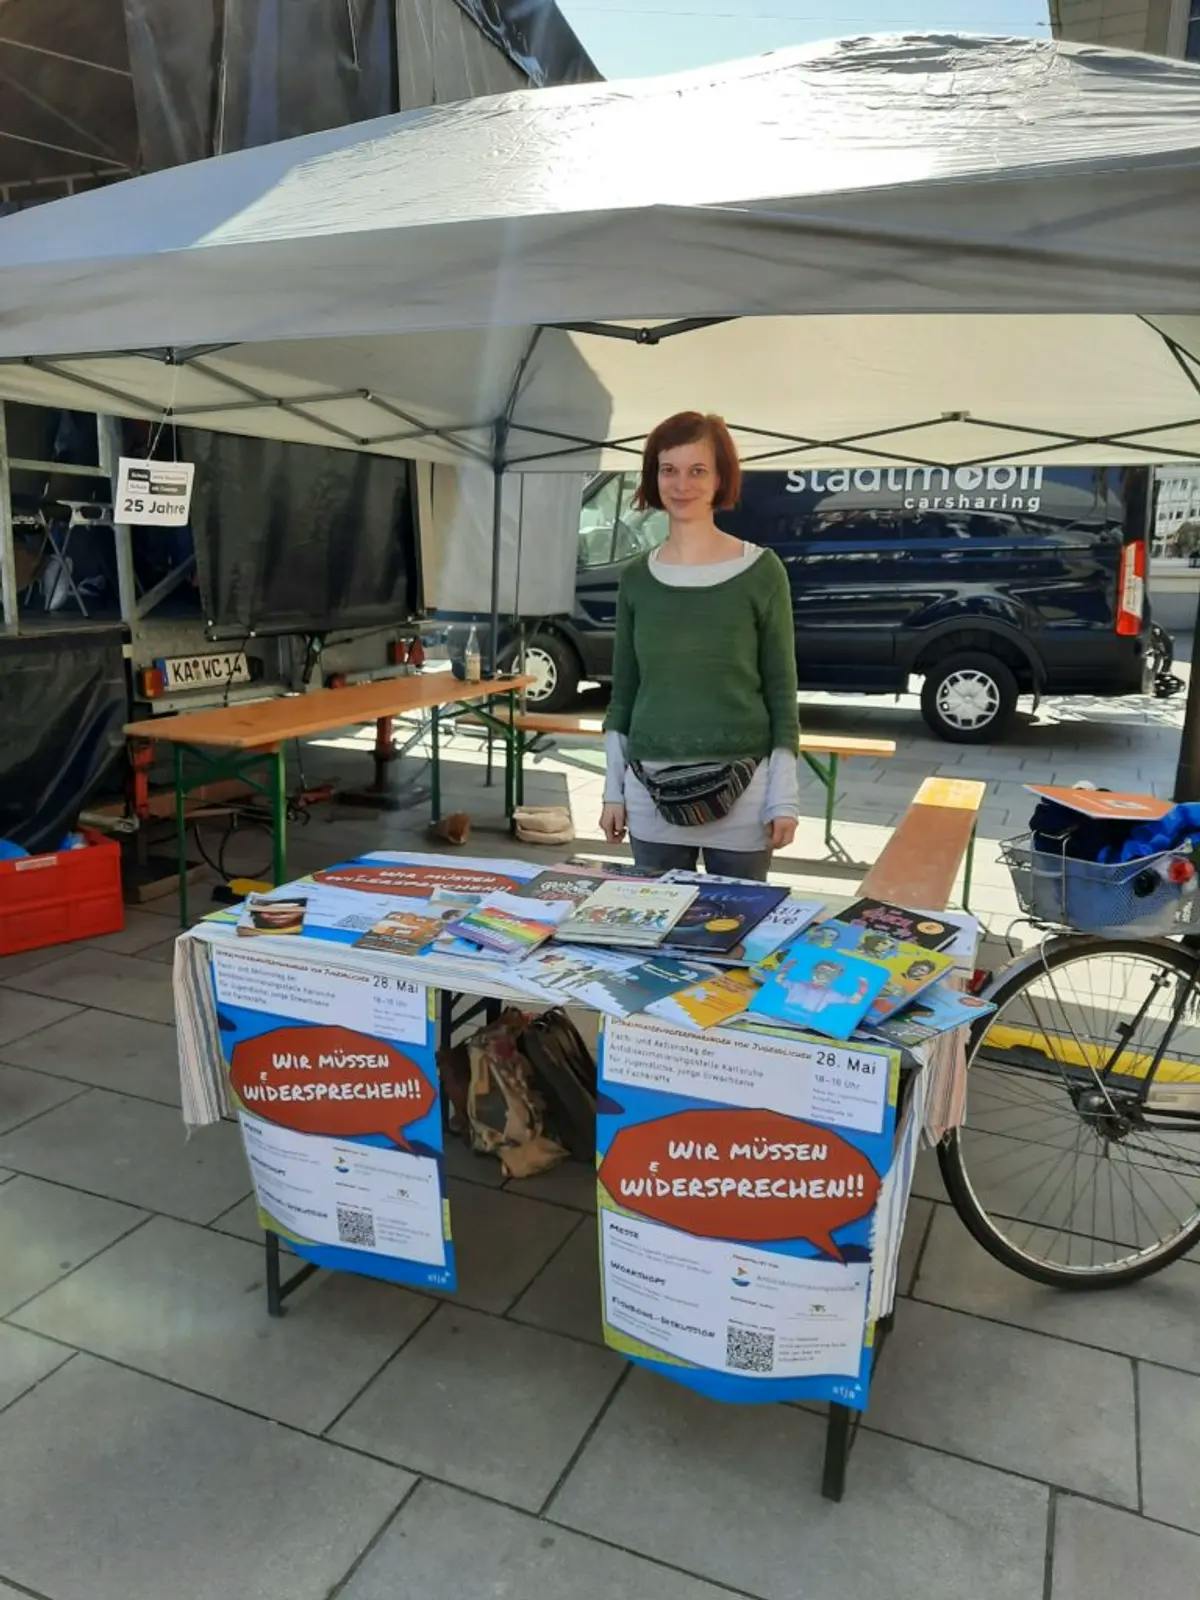 Abgebildet ist unser Stand auf dem Marktplatz mit vielen Broschüren und einer Mitarbeiterin der Antidsikriminierungsstelle Karlsruhe.